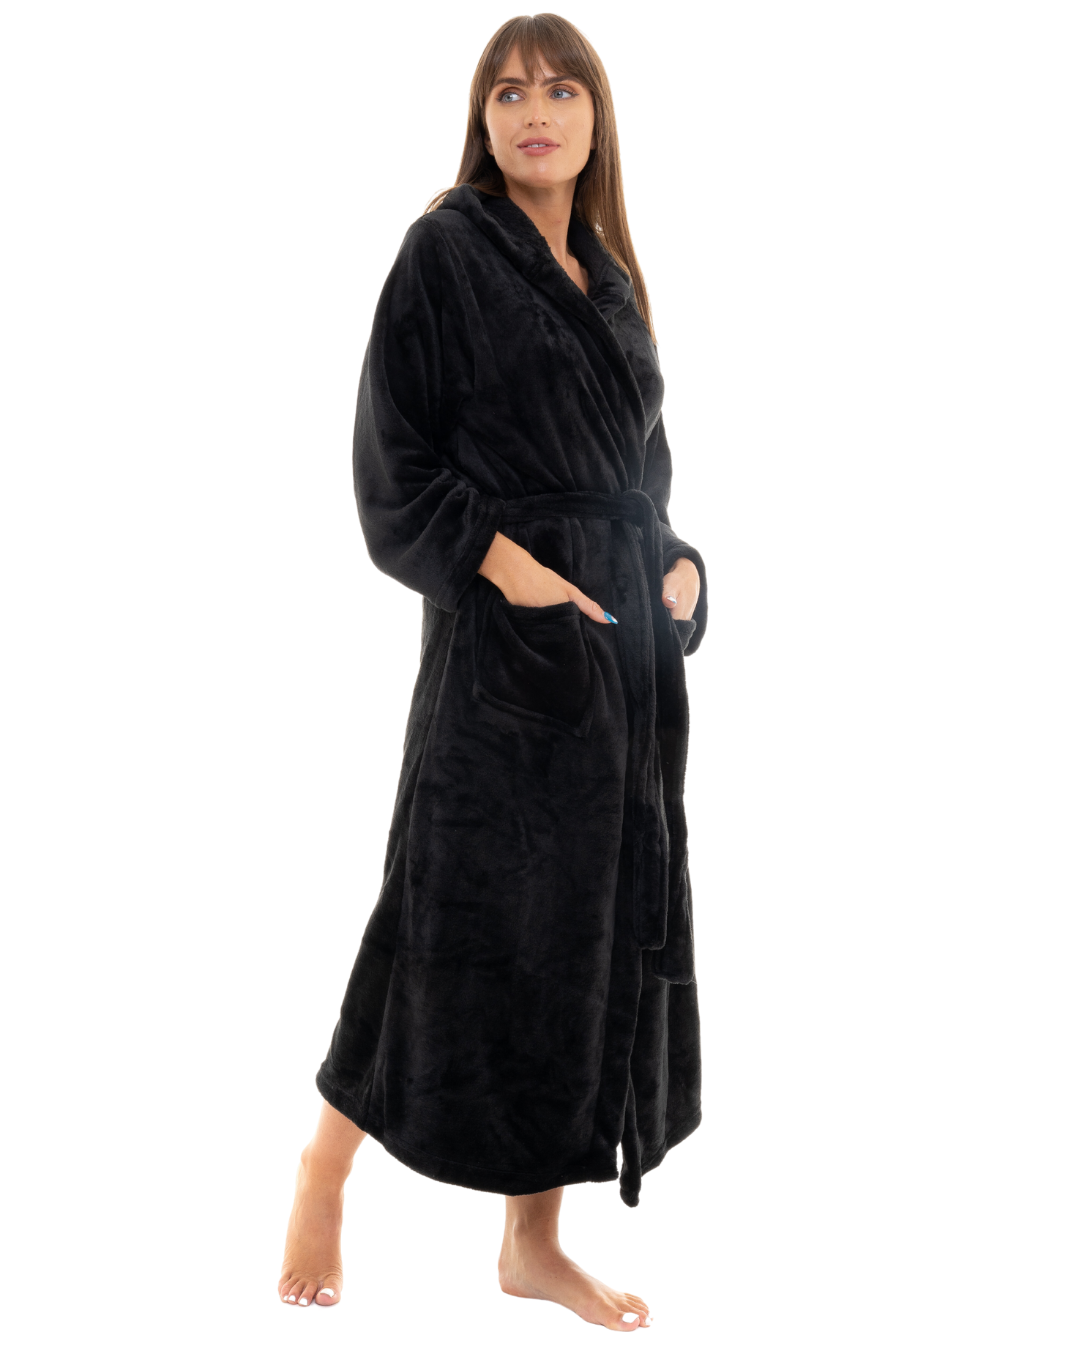 SHOOLIN Kimono Robe Long Bathrobe For Women, 3/4 Sleeve And Calf Length  Kimono For Women